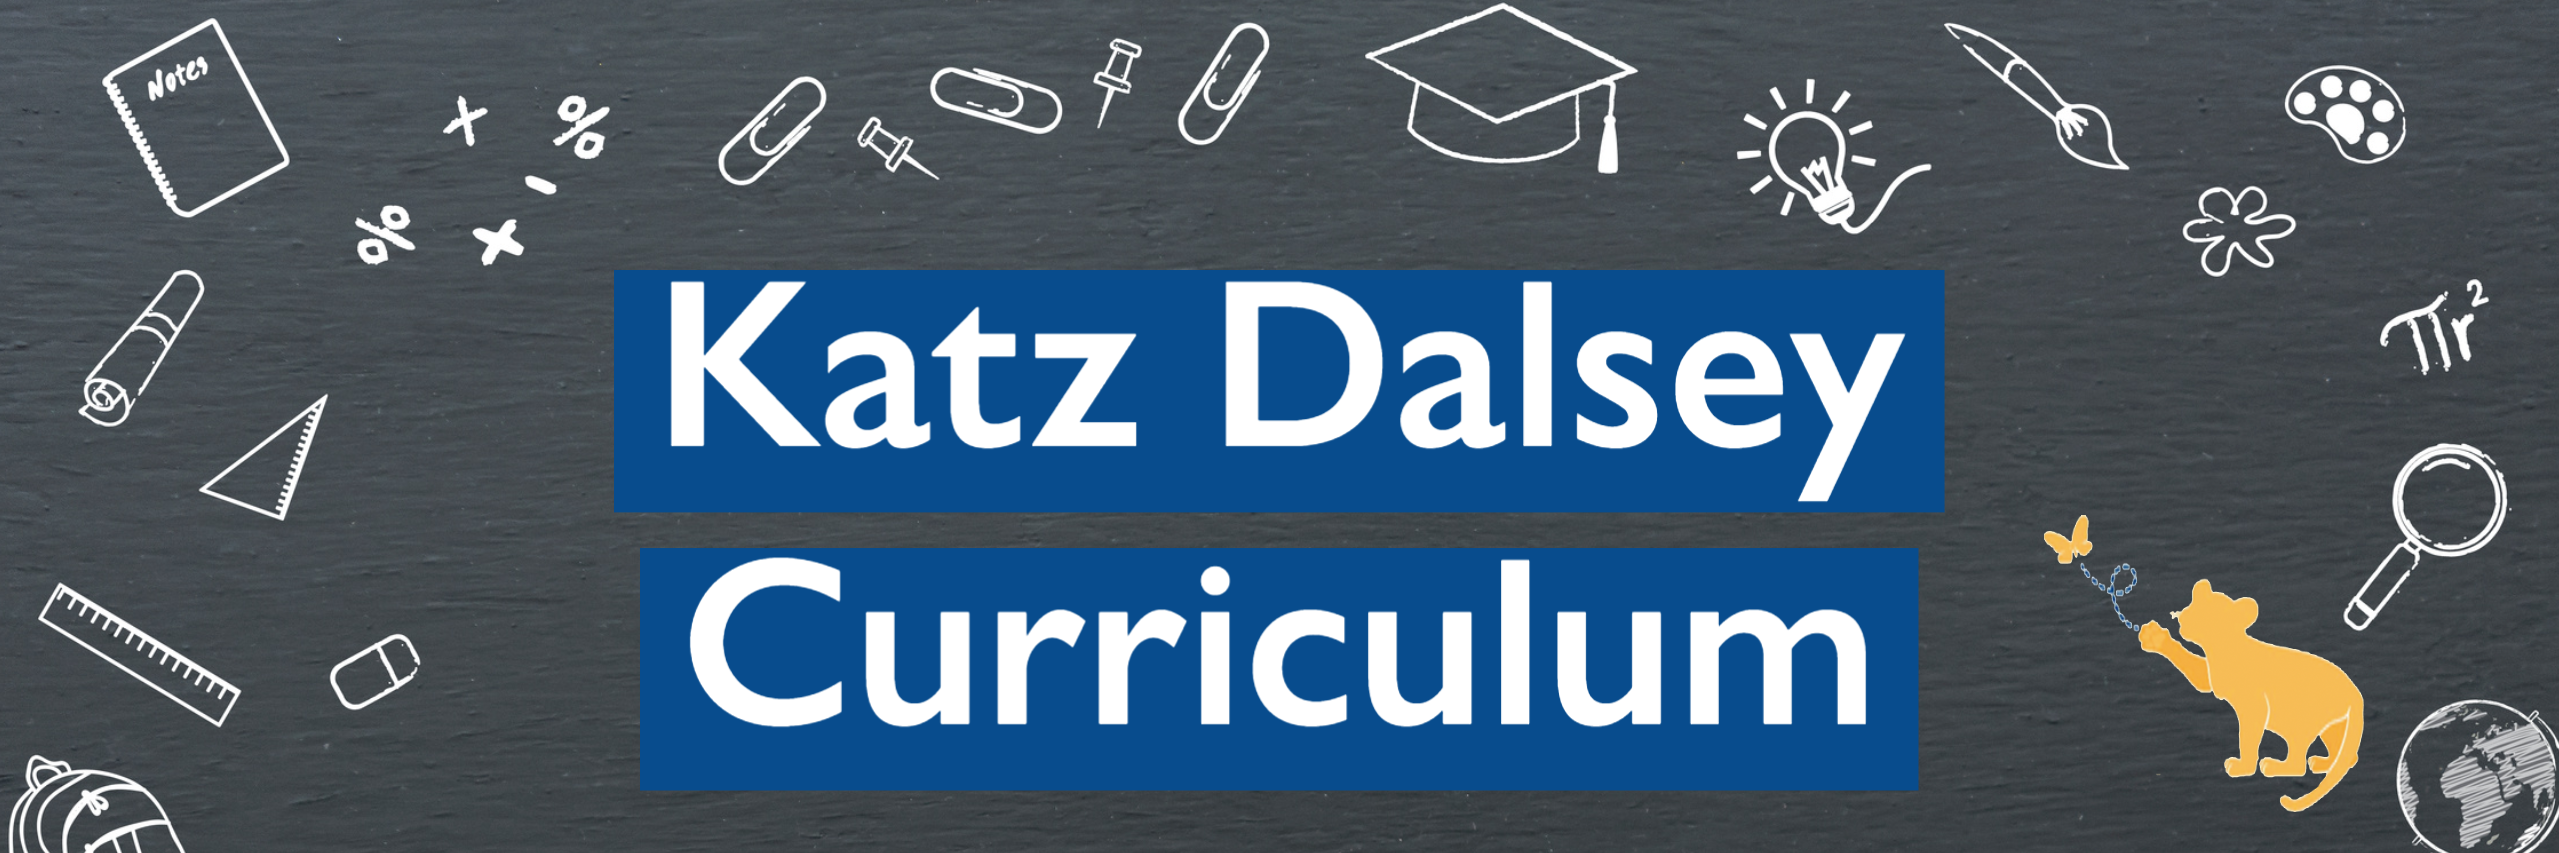 Katz Dalsey Curriculum